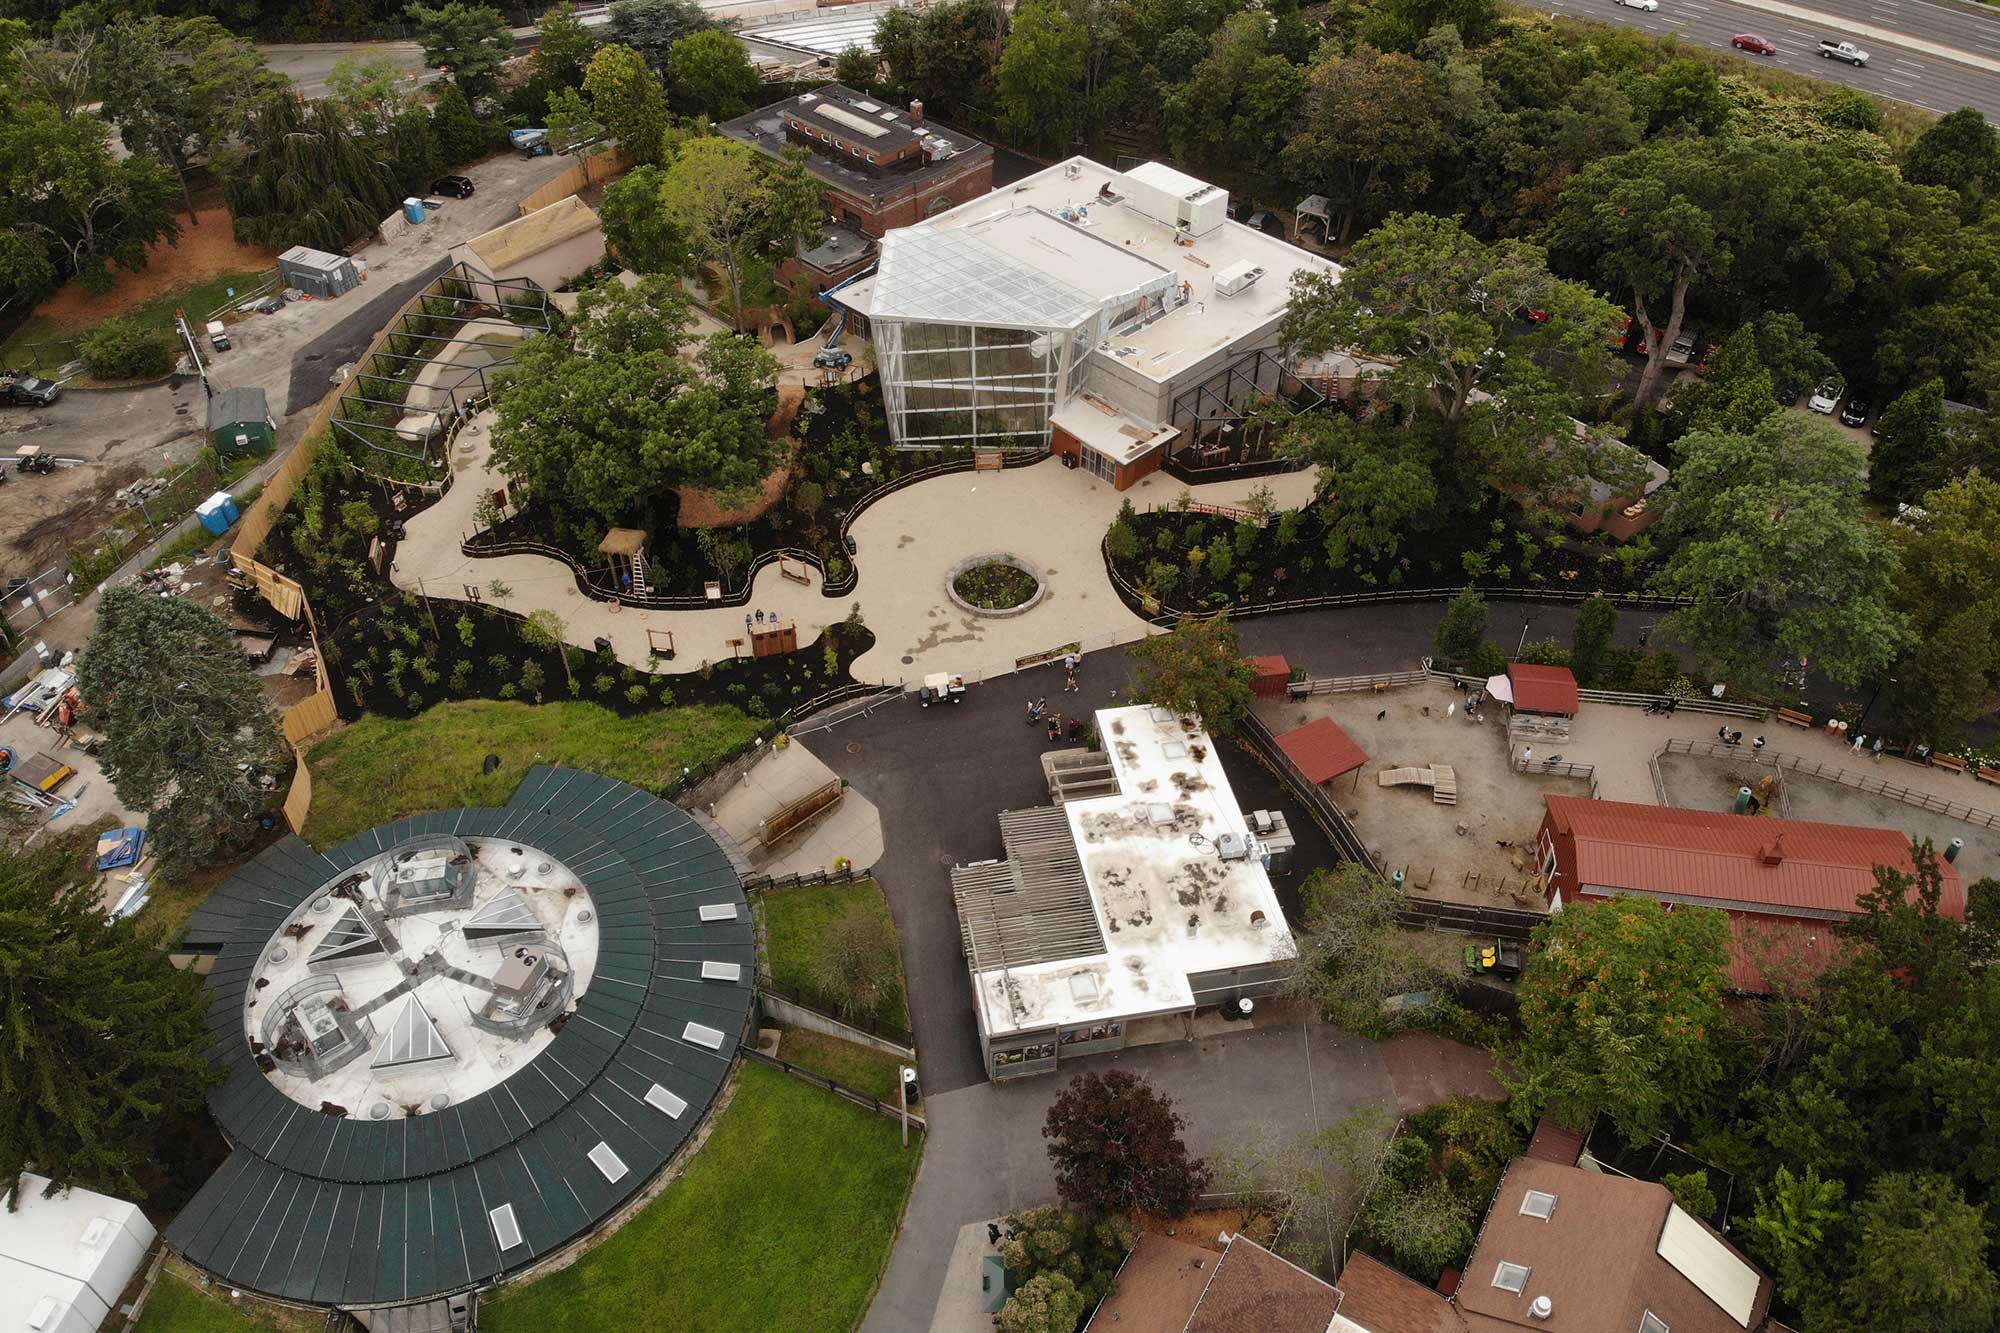 Roger Williams Zoo Rainforest Exhibit by Bentley Builders